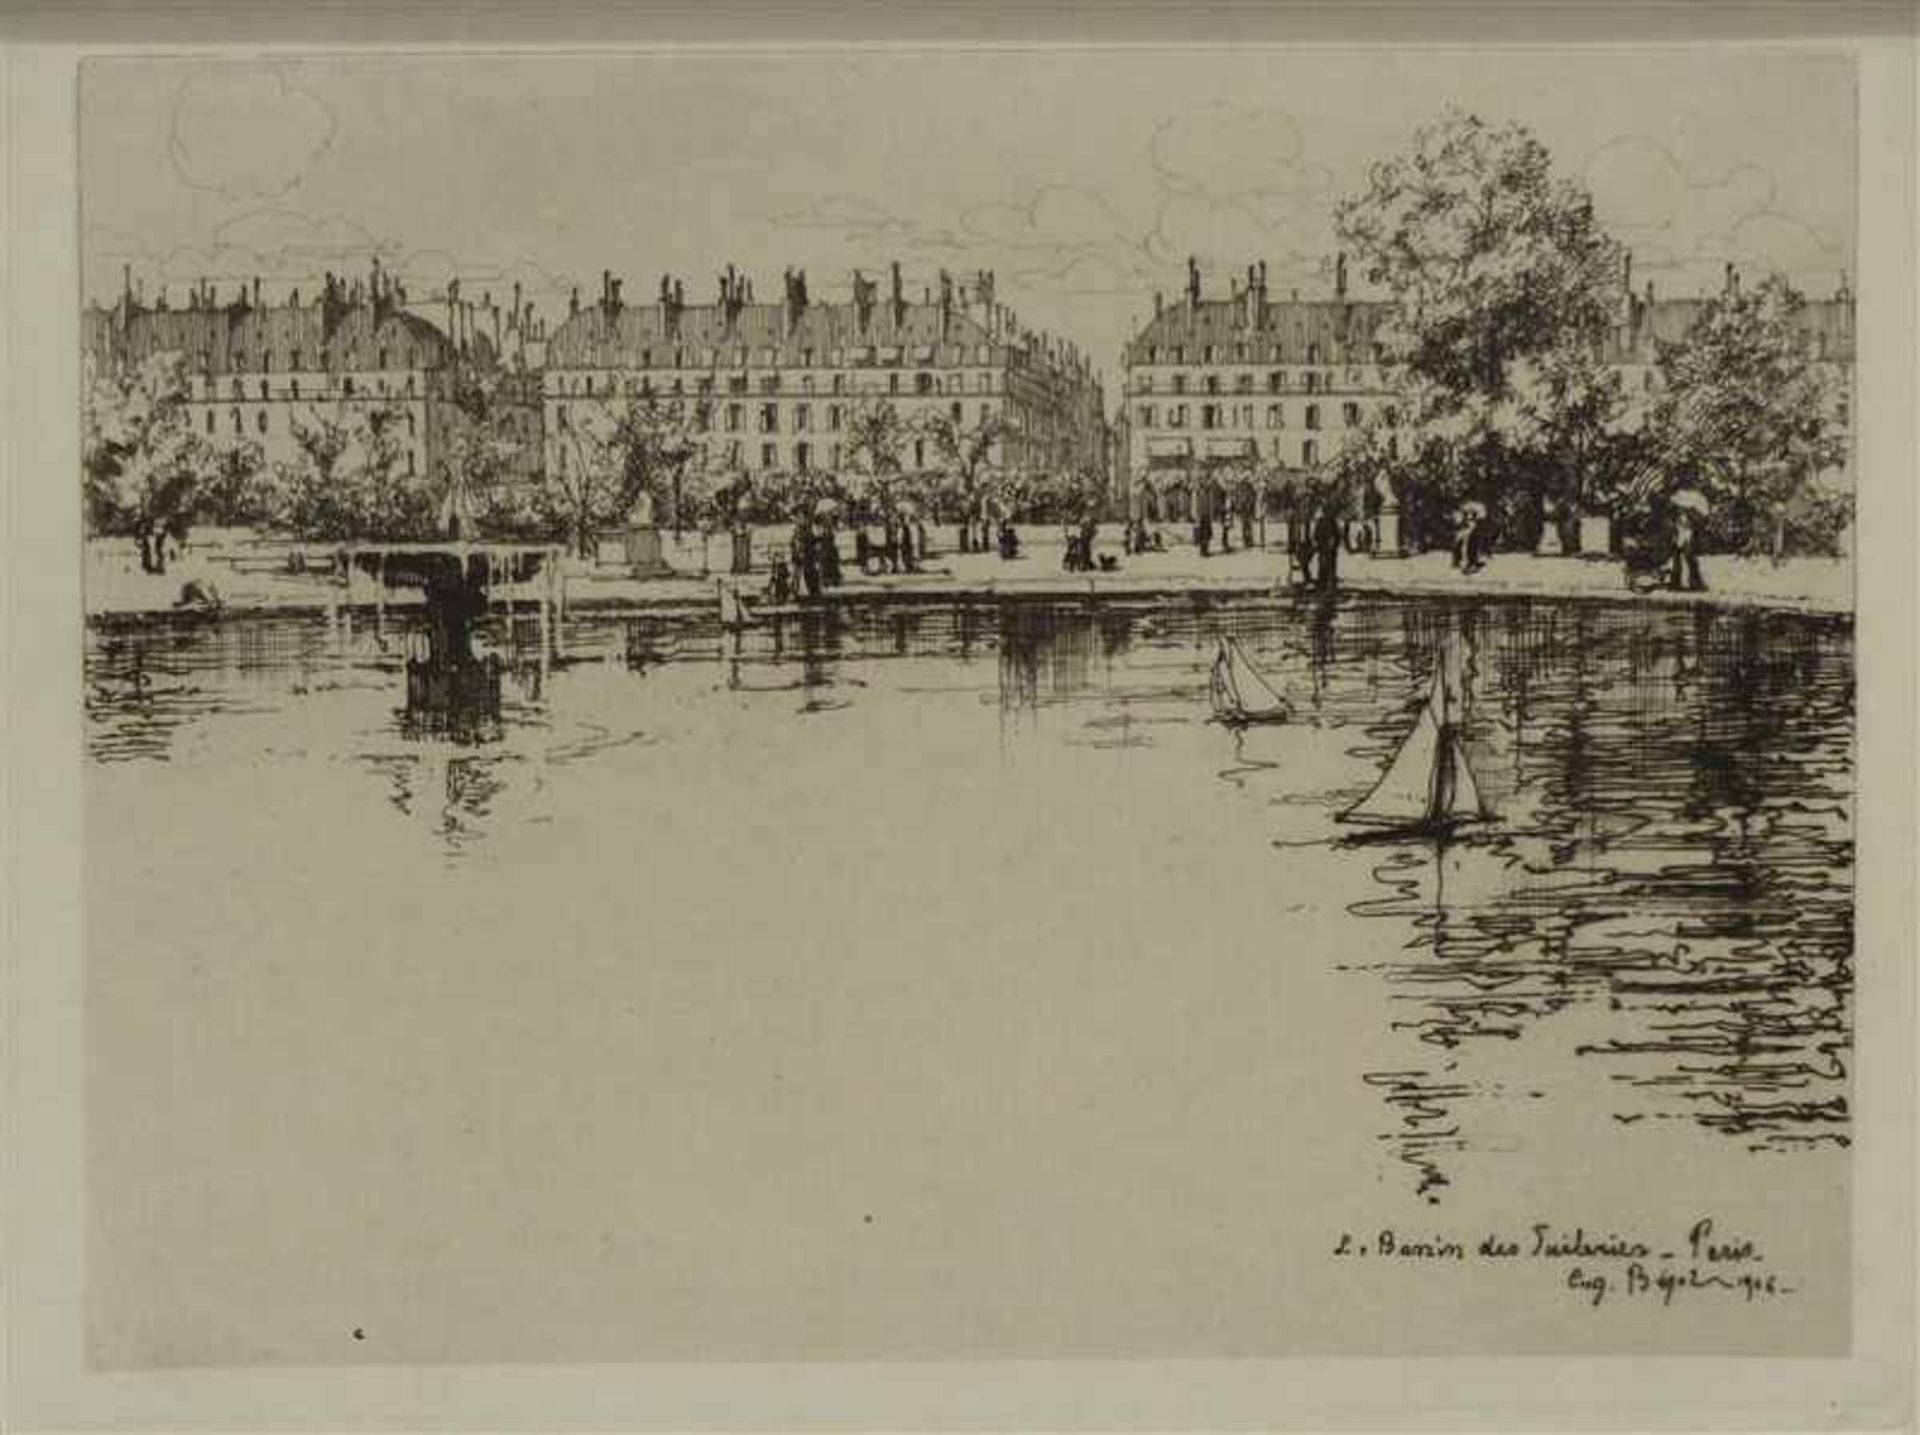 Radierungvon Eugene Bejot, 1867 - 1931 Paris, "Bassin des Tuileries", Paris, in der Platte signiert,